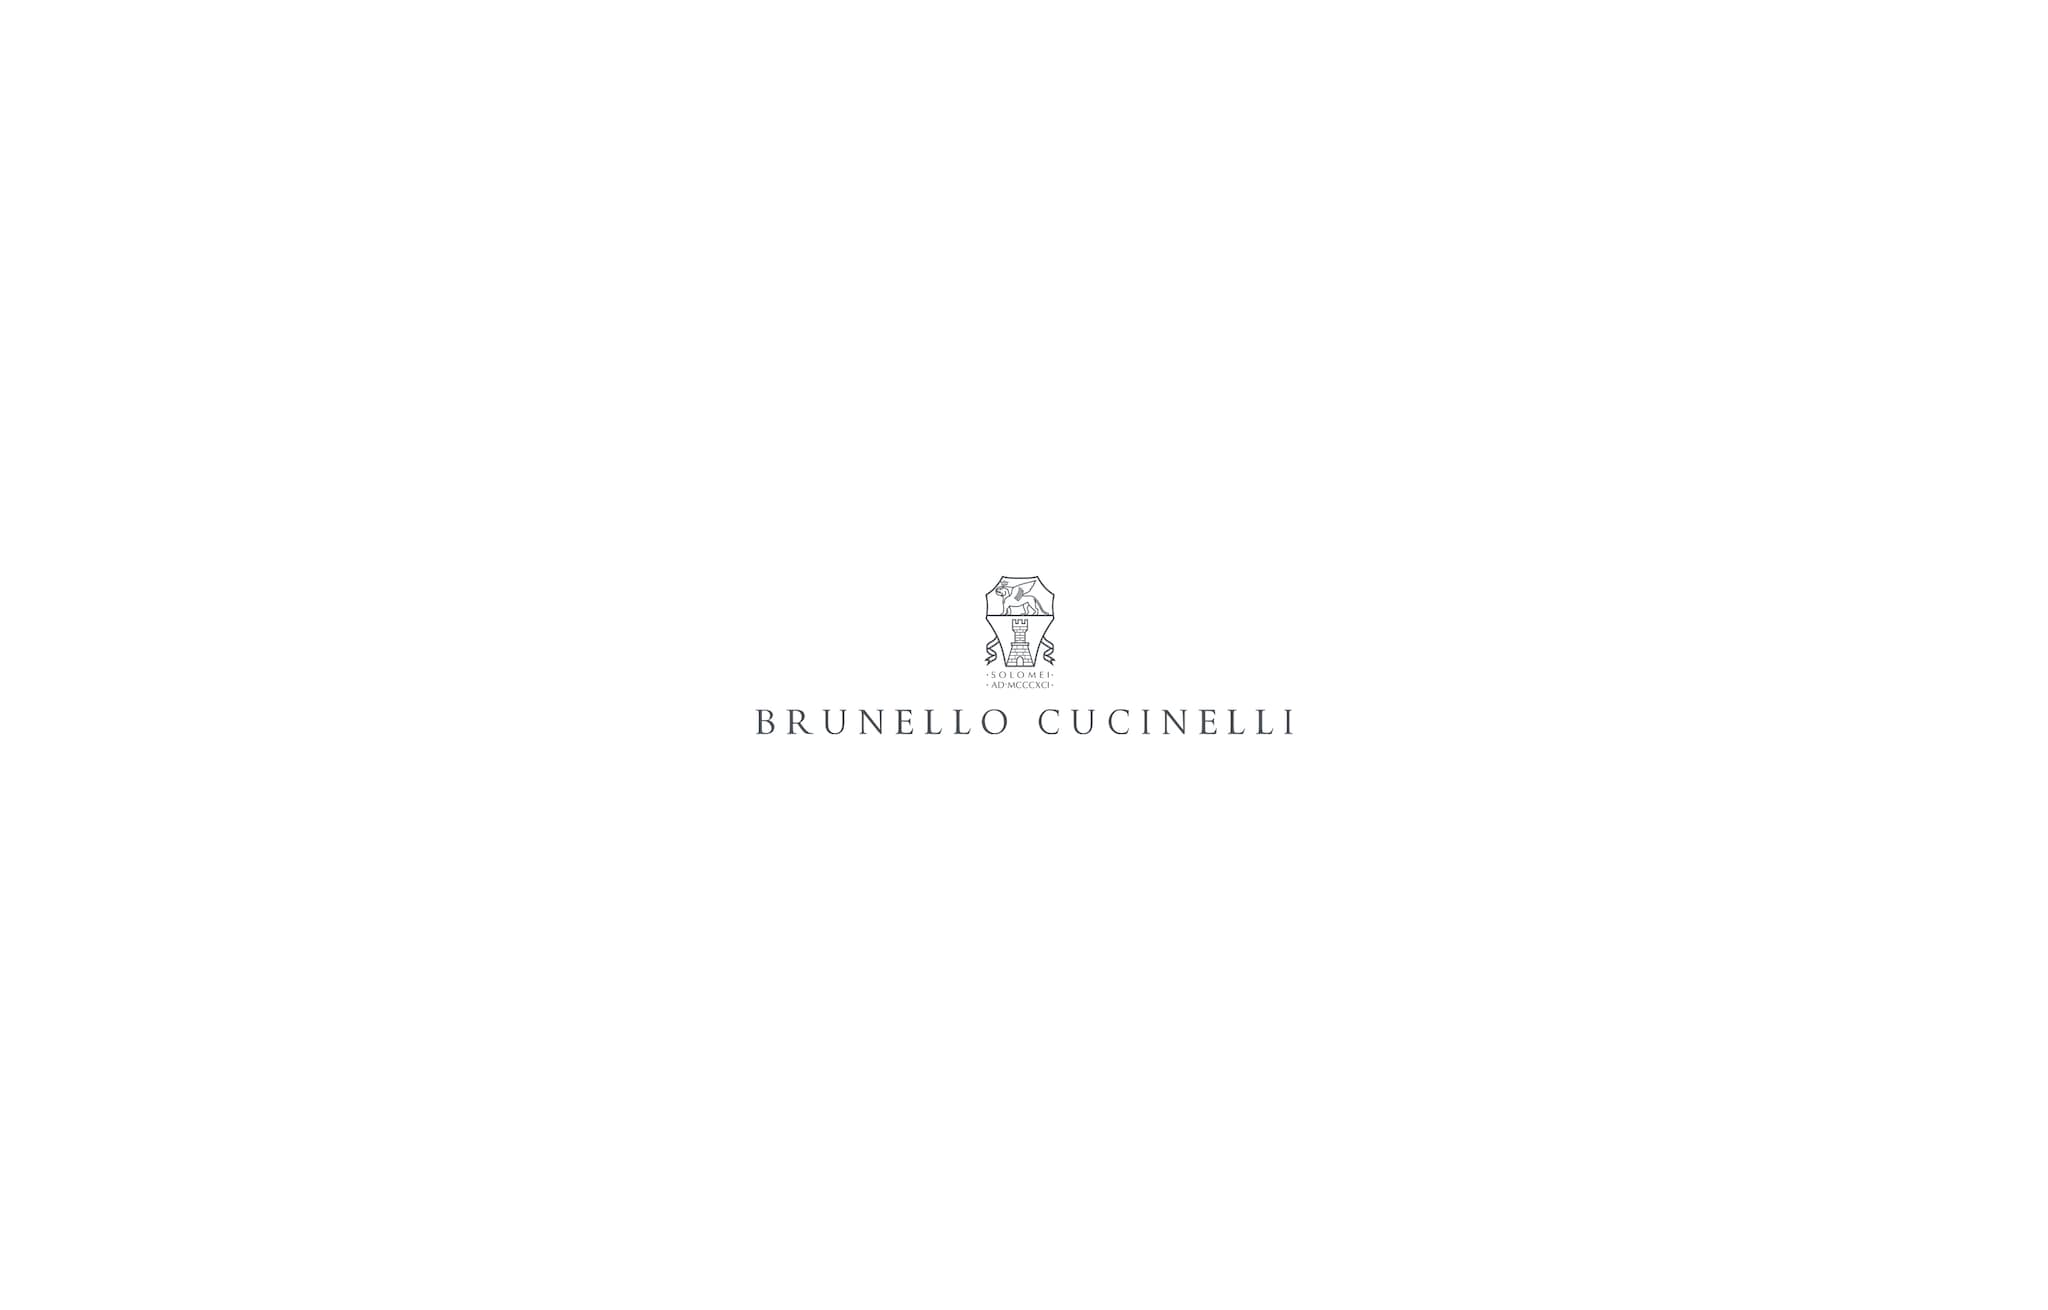  府绸面料衬衫 褐煤灰 女款 - Brunello Cucinelli 